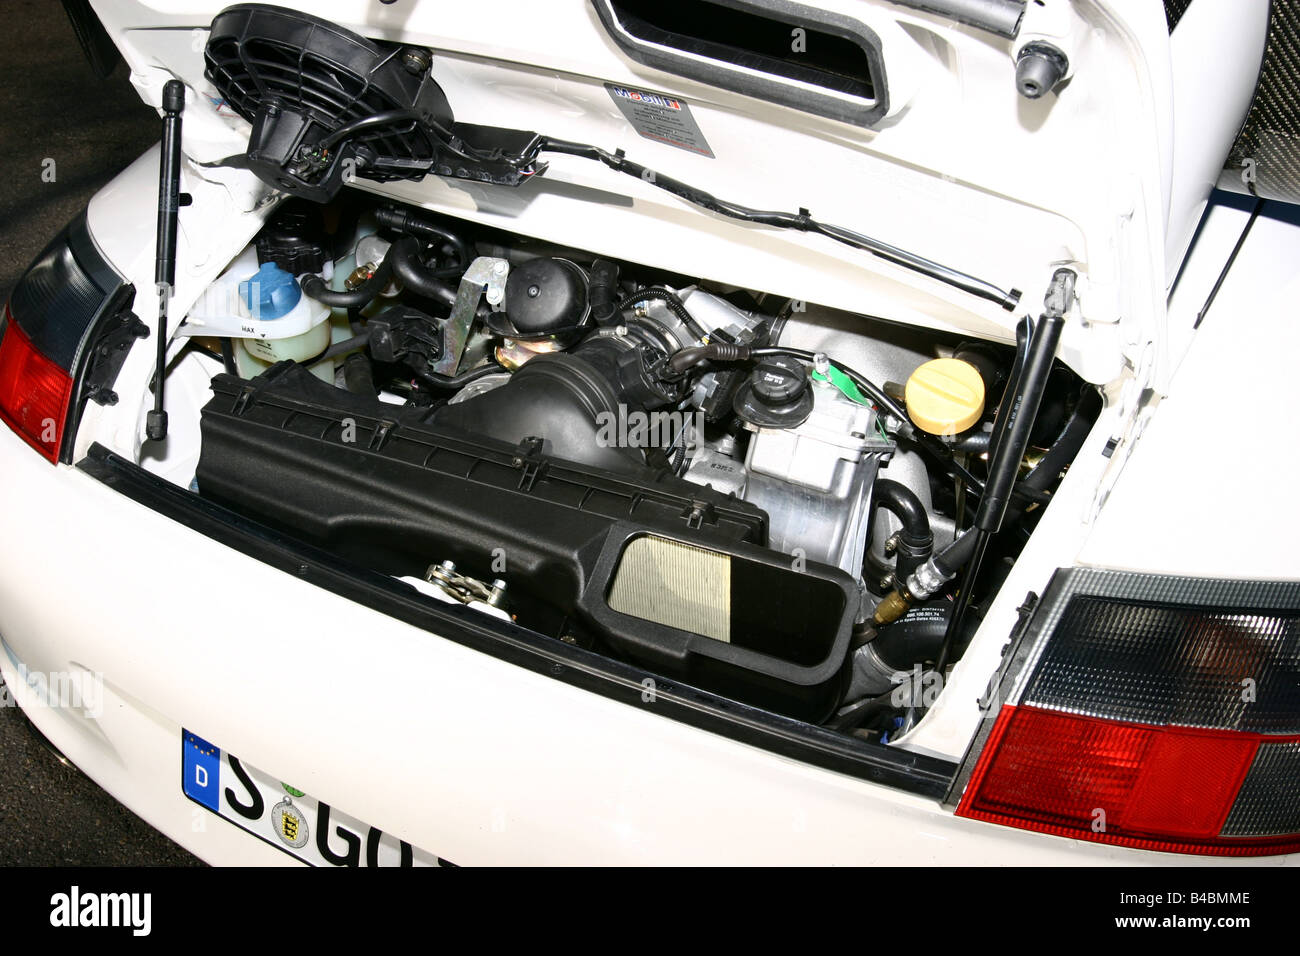 Voiture, Porsche GT3 RS, roadster, l'année de modèle 2003-,  coupé/cabriolet, blanc, FGHDS, vue dans le compartiment moteur, la  technique/accessoire, le CAC Photo Stock - Alamy